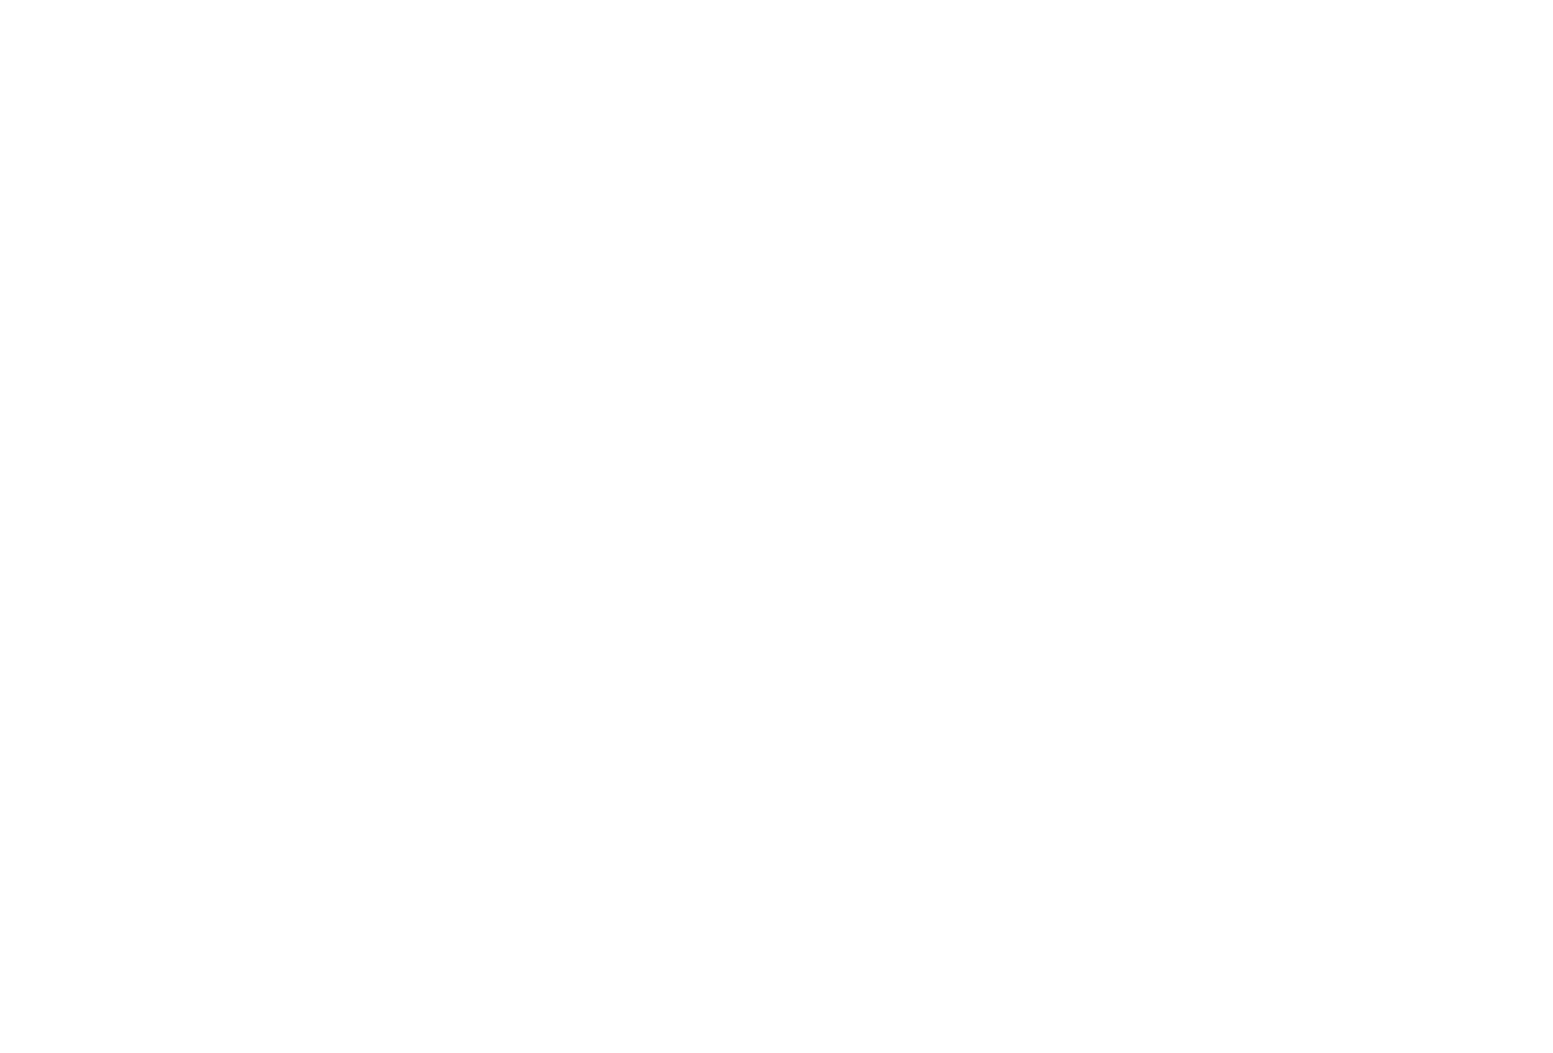 SOS Cognição